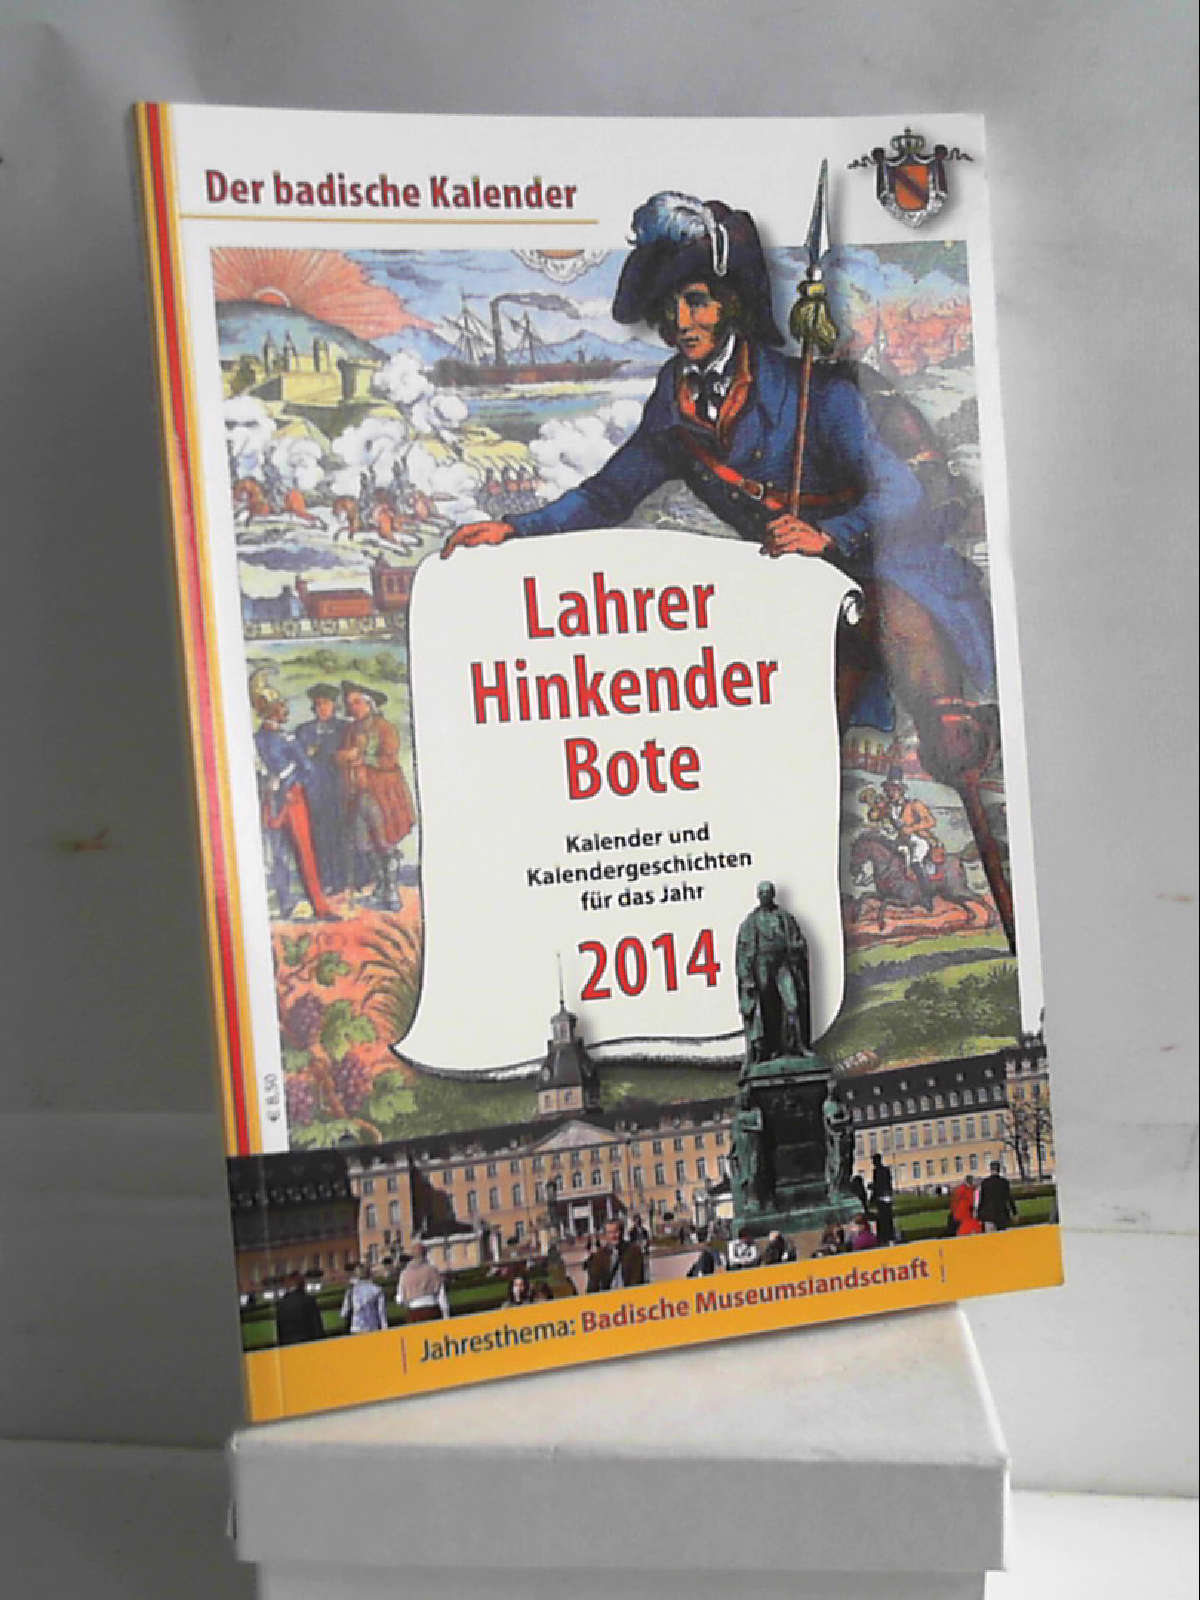 Lahrer Hinkender Bote 2014: Kalender und Kalendergeschichten für das Jahr 2014 - unbekannt